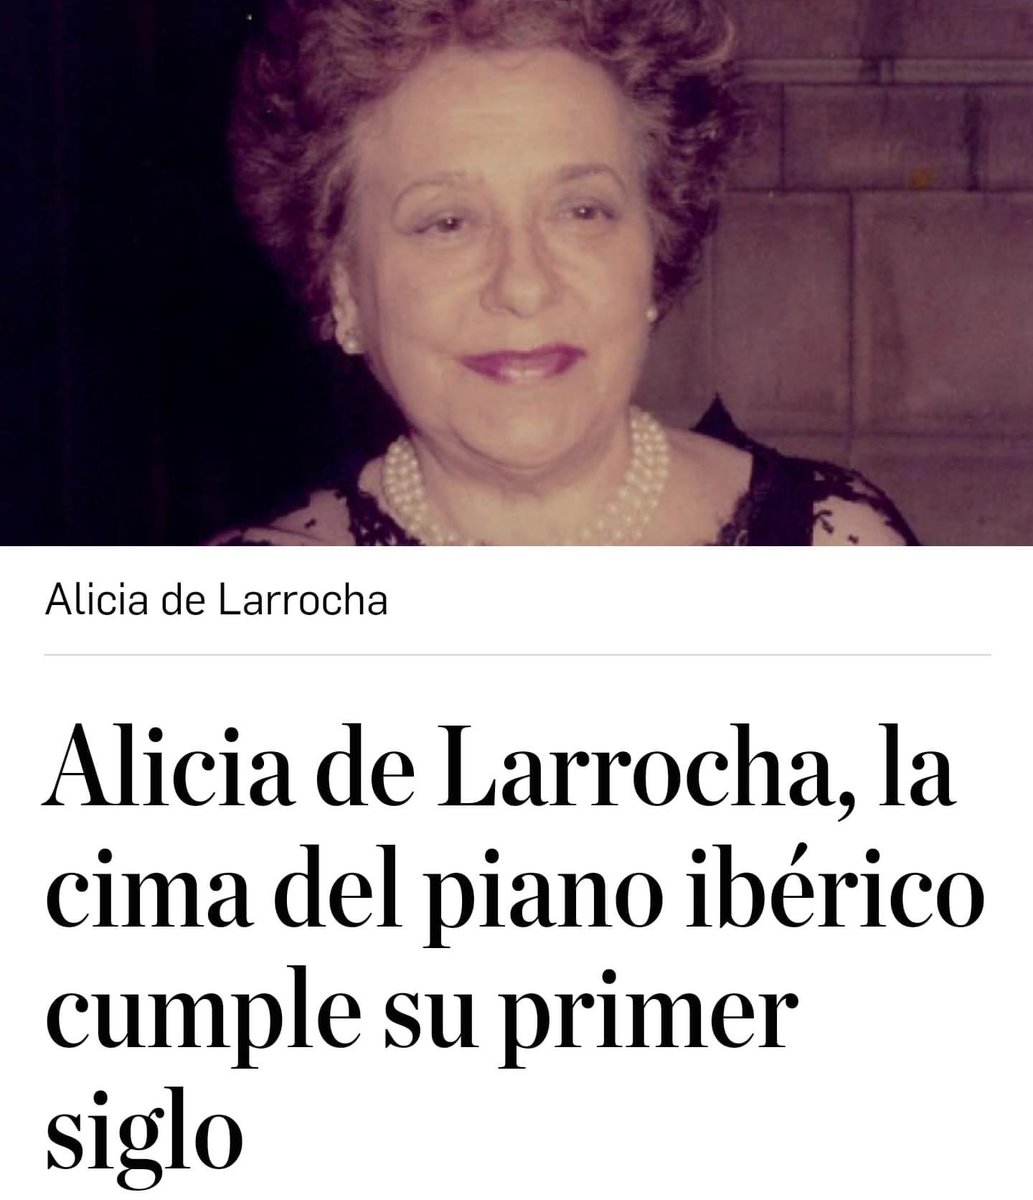 Un siglo de Alicia de Larrocha!

#piano #aliciadelarrocha